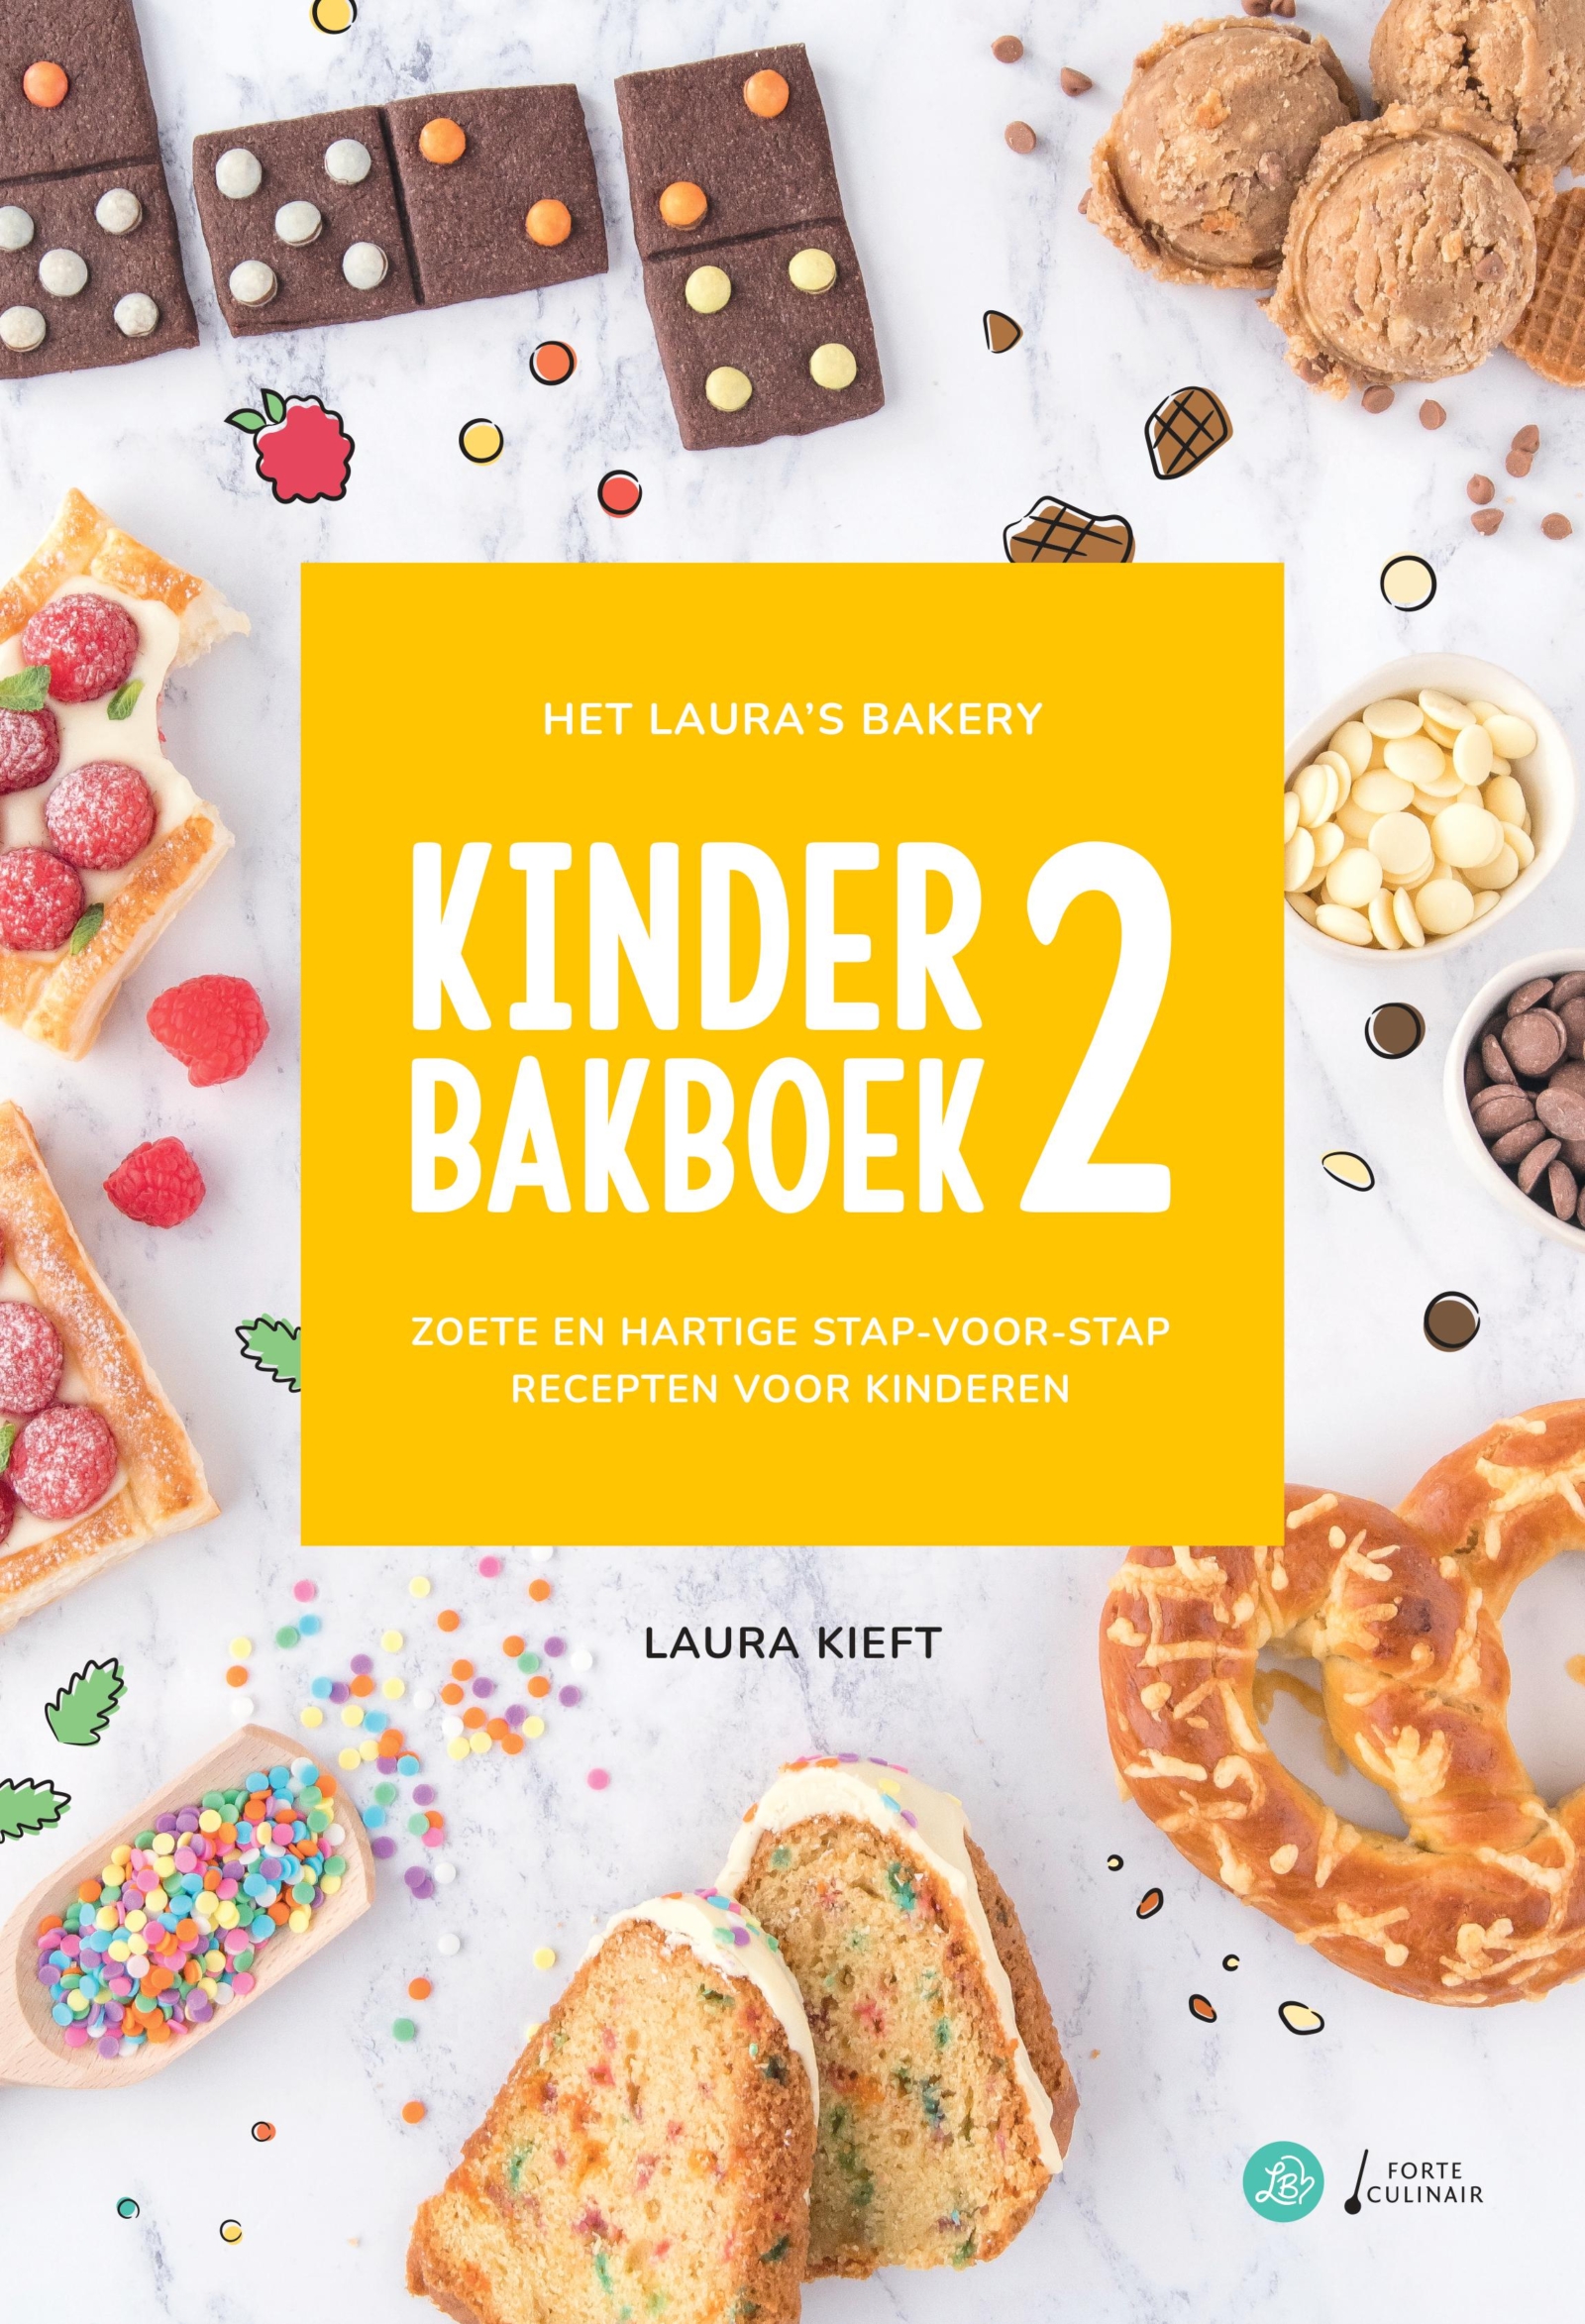 Bekendmaking Laura's Bakery Het Kinderbakboek 2